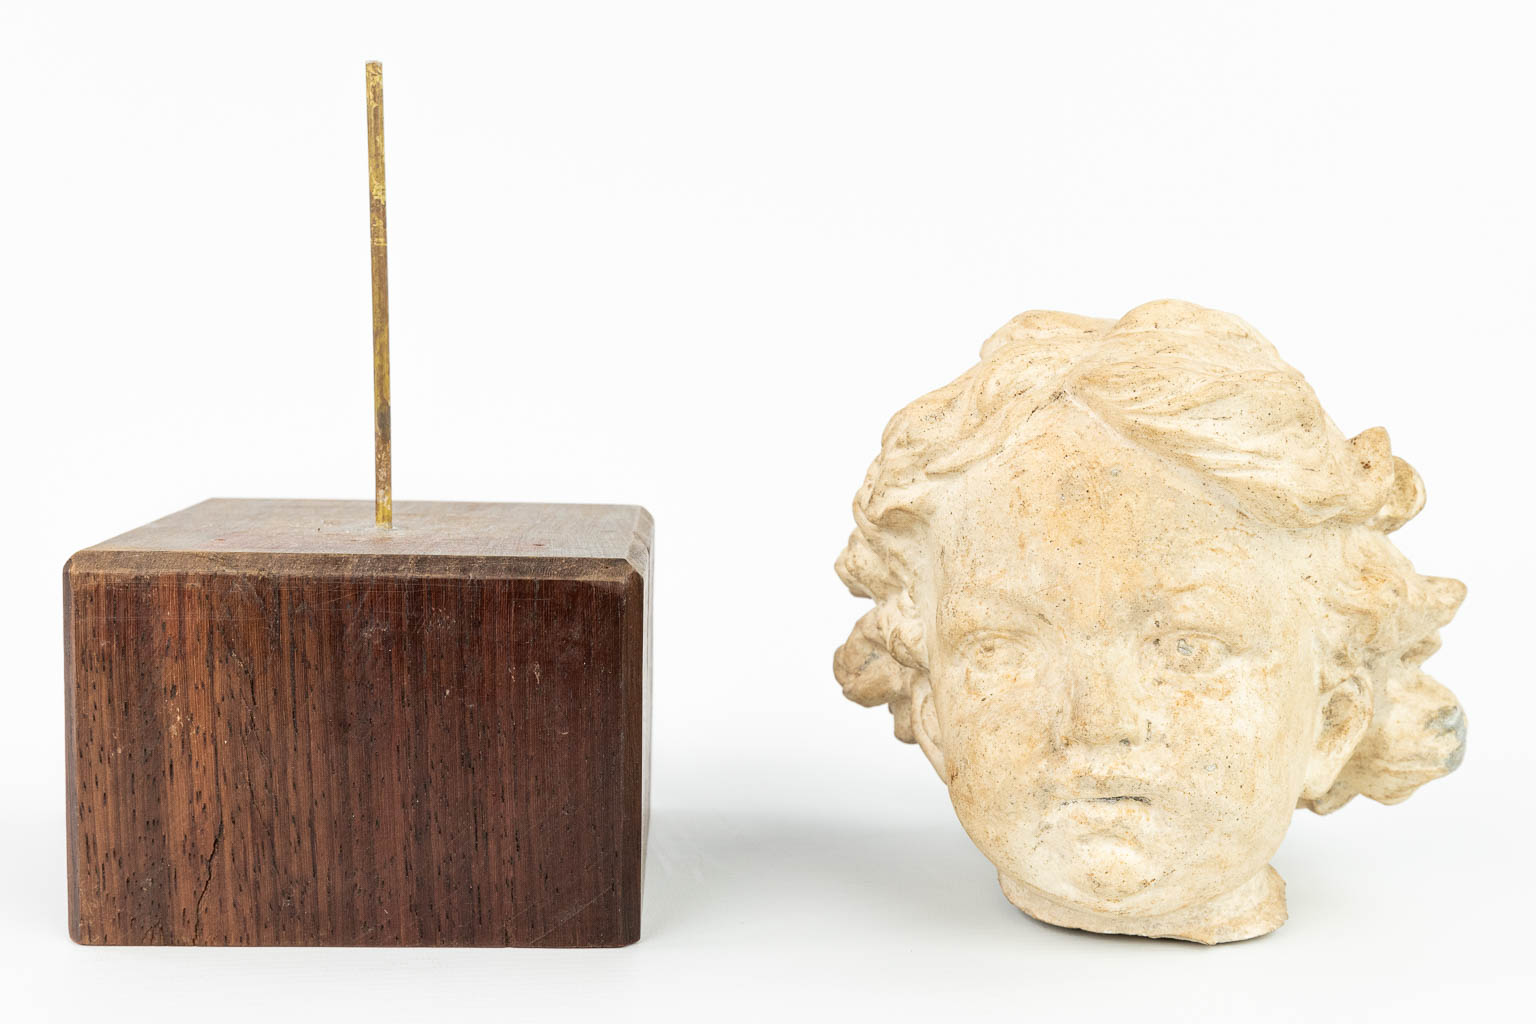 Een hoofd van een kind gemaakt uit terracotta. (H:14cm)